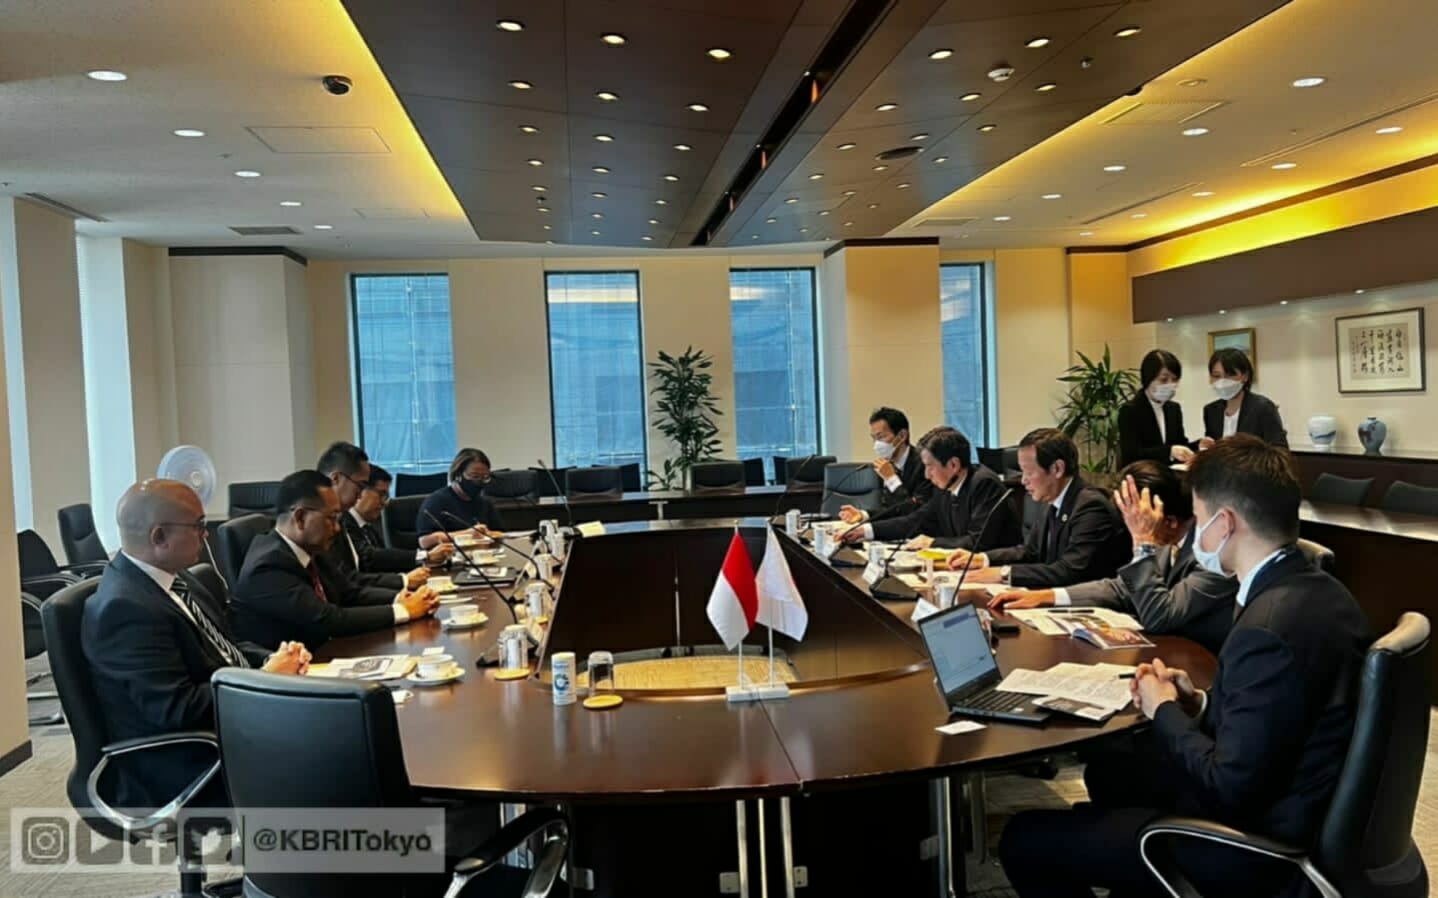 Kepala Otorita Ibu Kota Negara Nusantara Bambang Susantono Ajak Pengusaha Jepang Kolaborasi Wujudkan IKN Nusantara Berkonsep Hijau